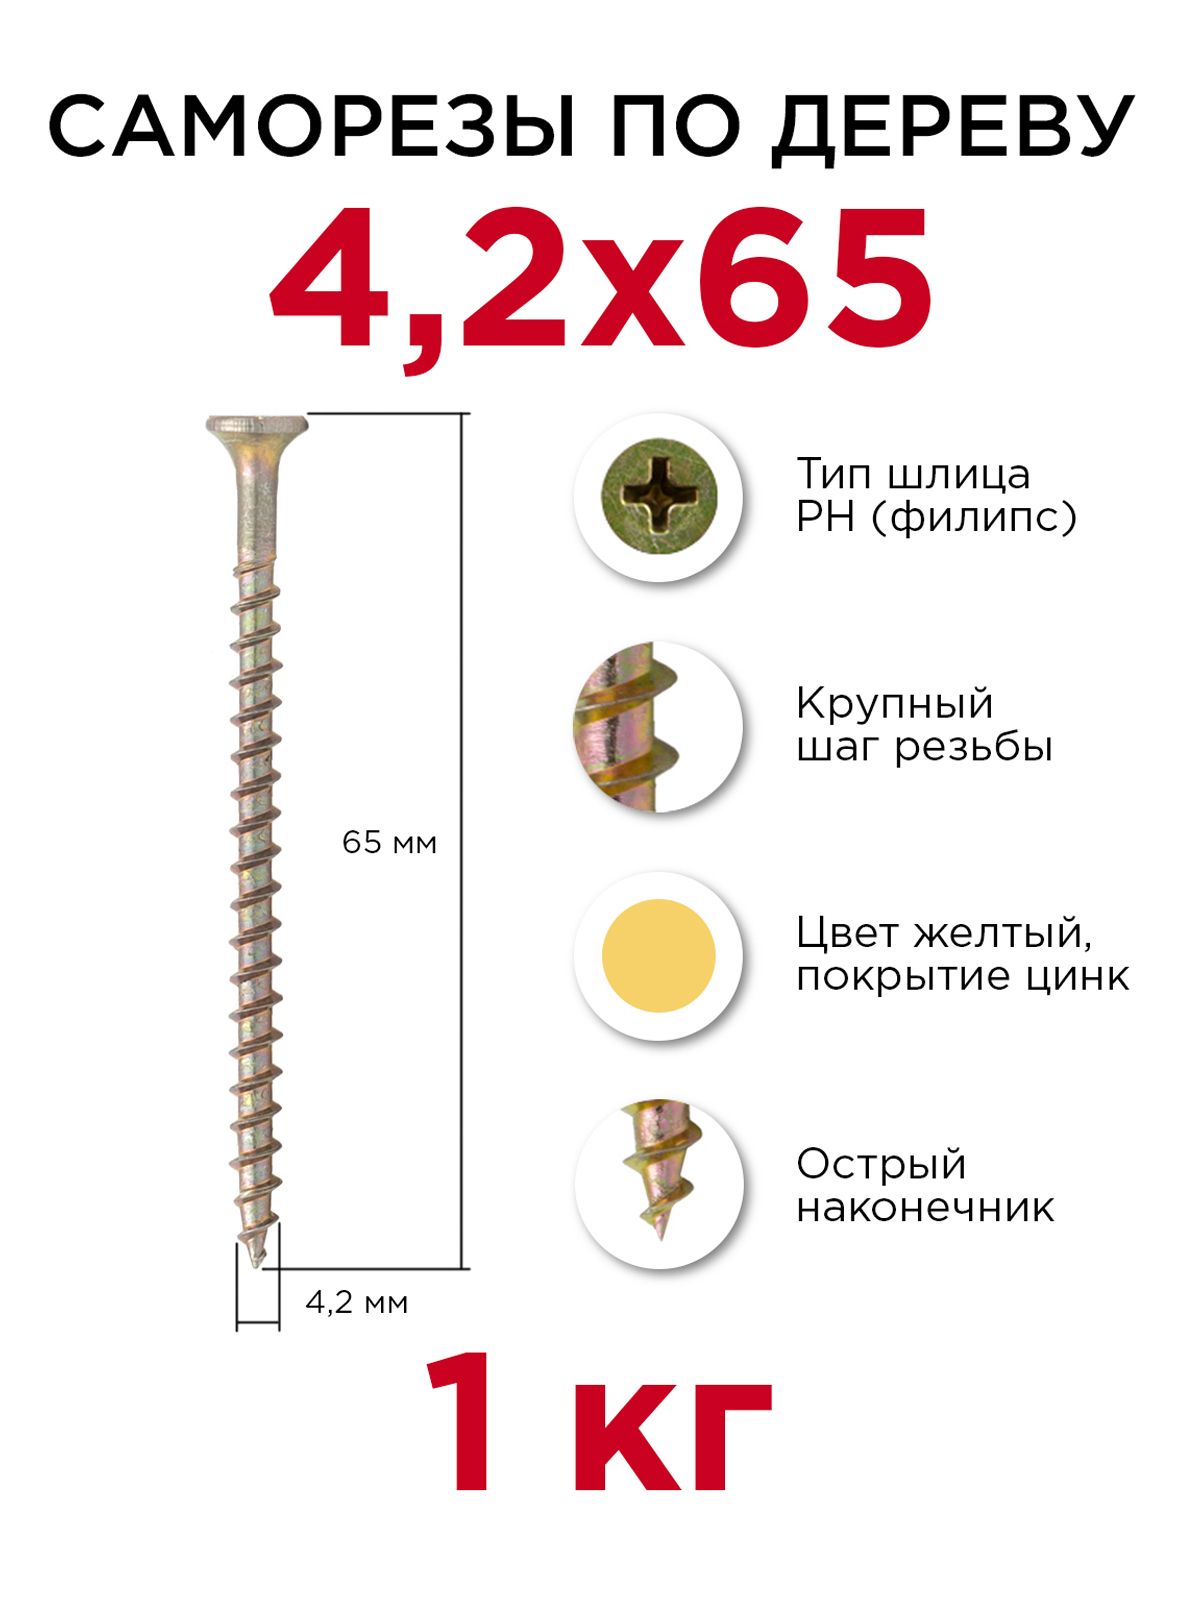 Саморезыподереву,Профикреп4,2x65мм,1кг